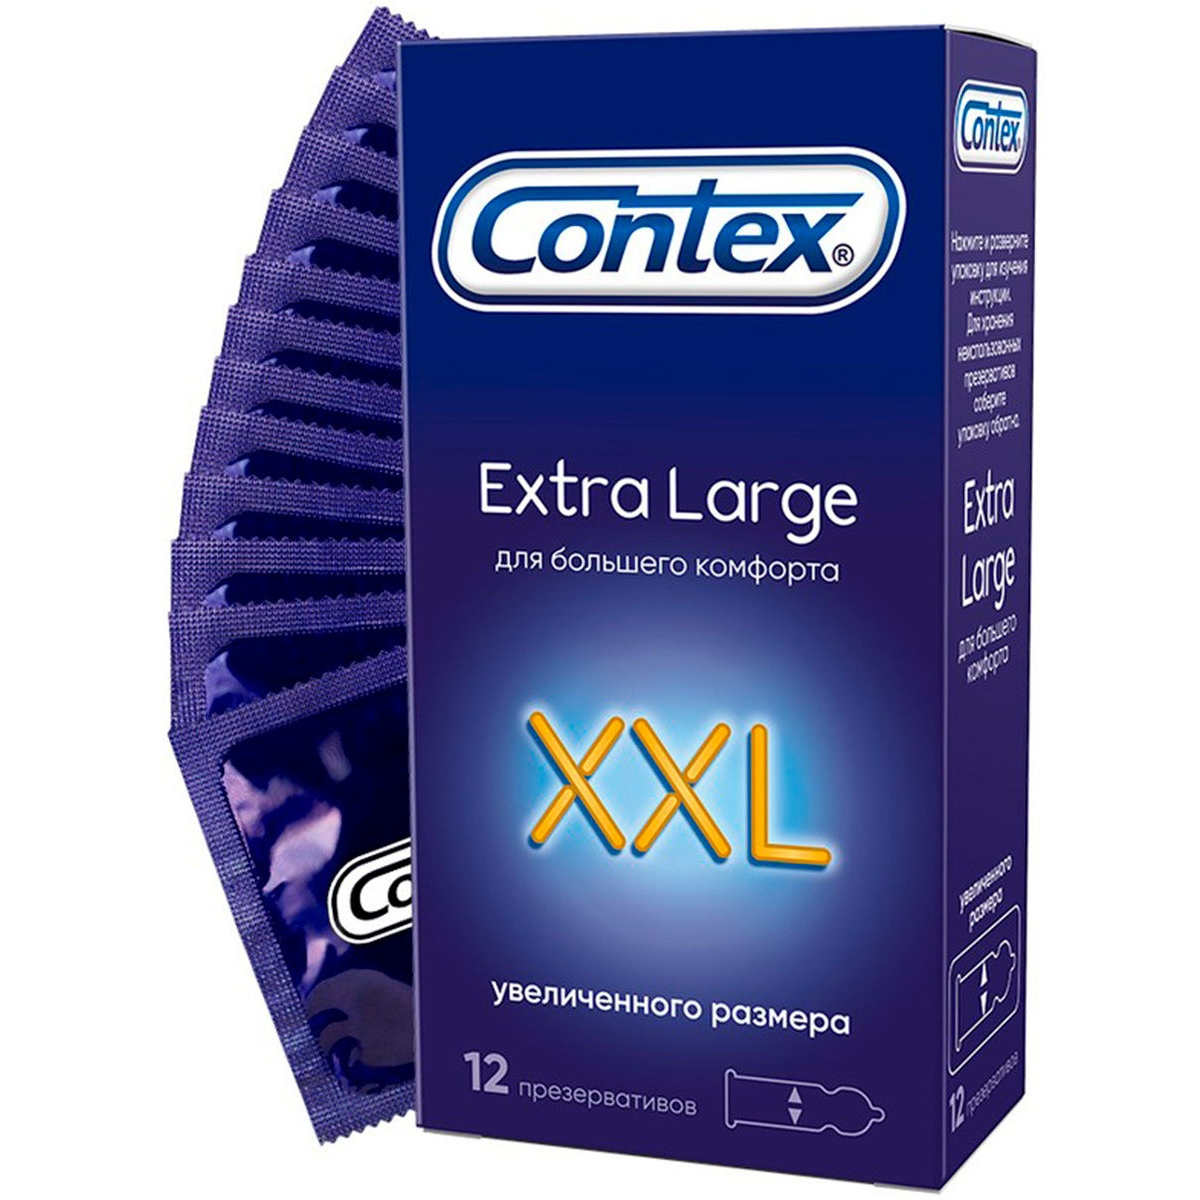 Презервативы Contex XXL Extra large №12 презервативы contex relief 12 шт